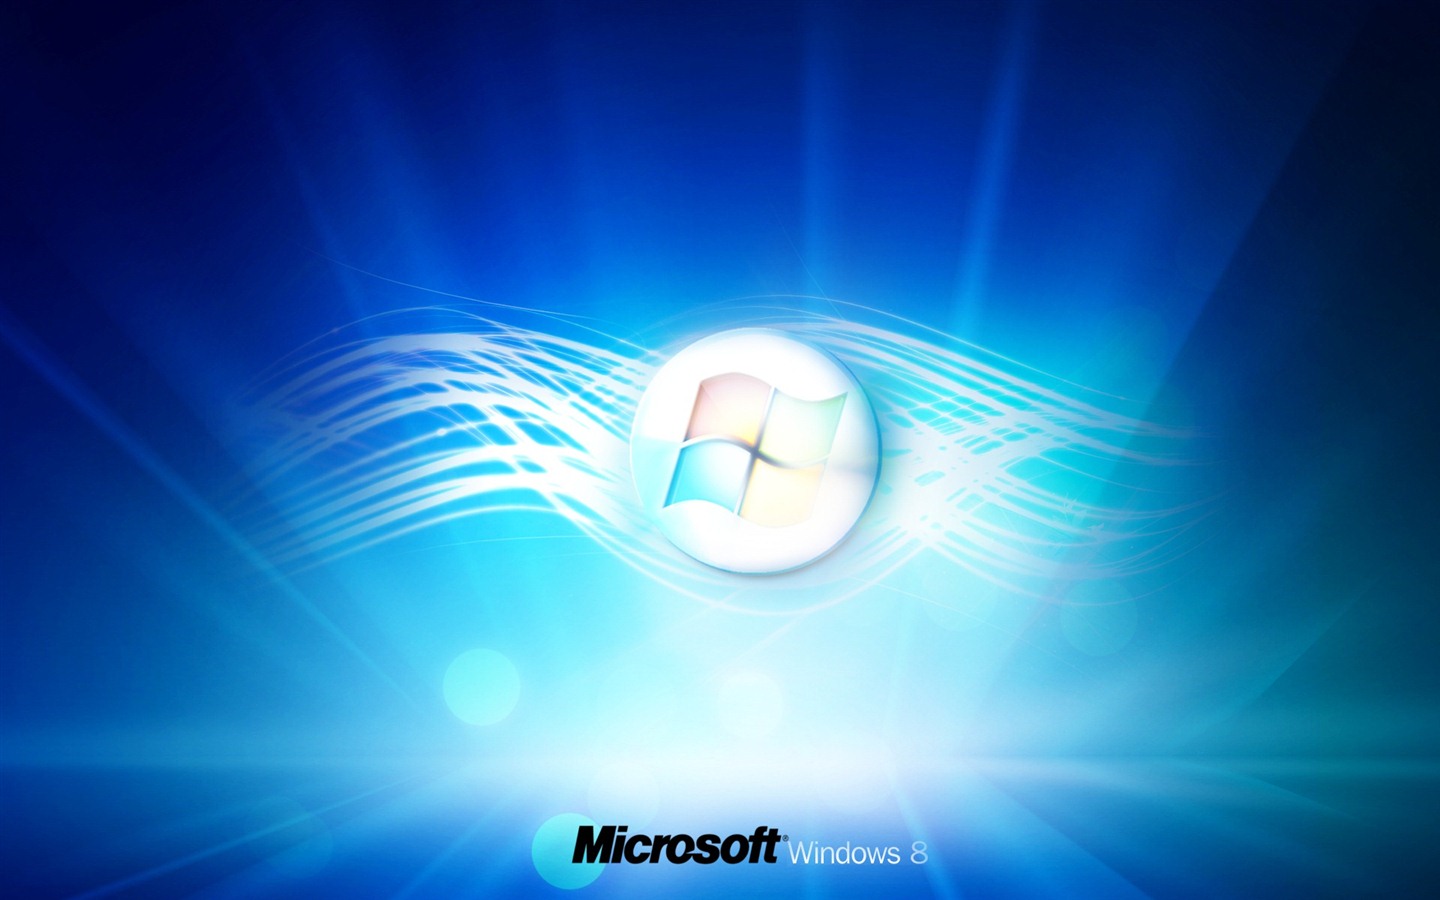 Windows 8 theme wallpaper (1) #3 - 1440x900